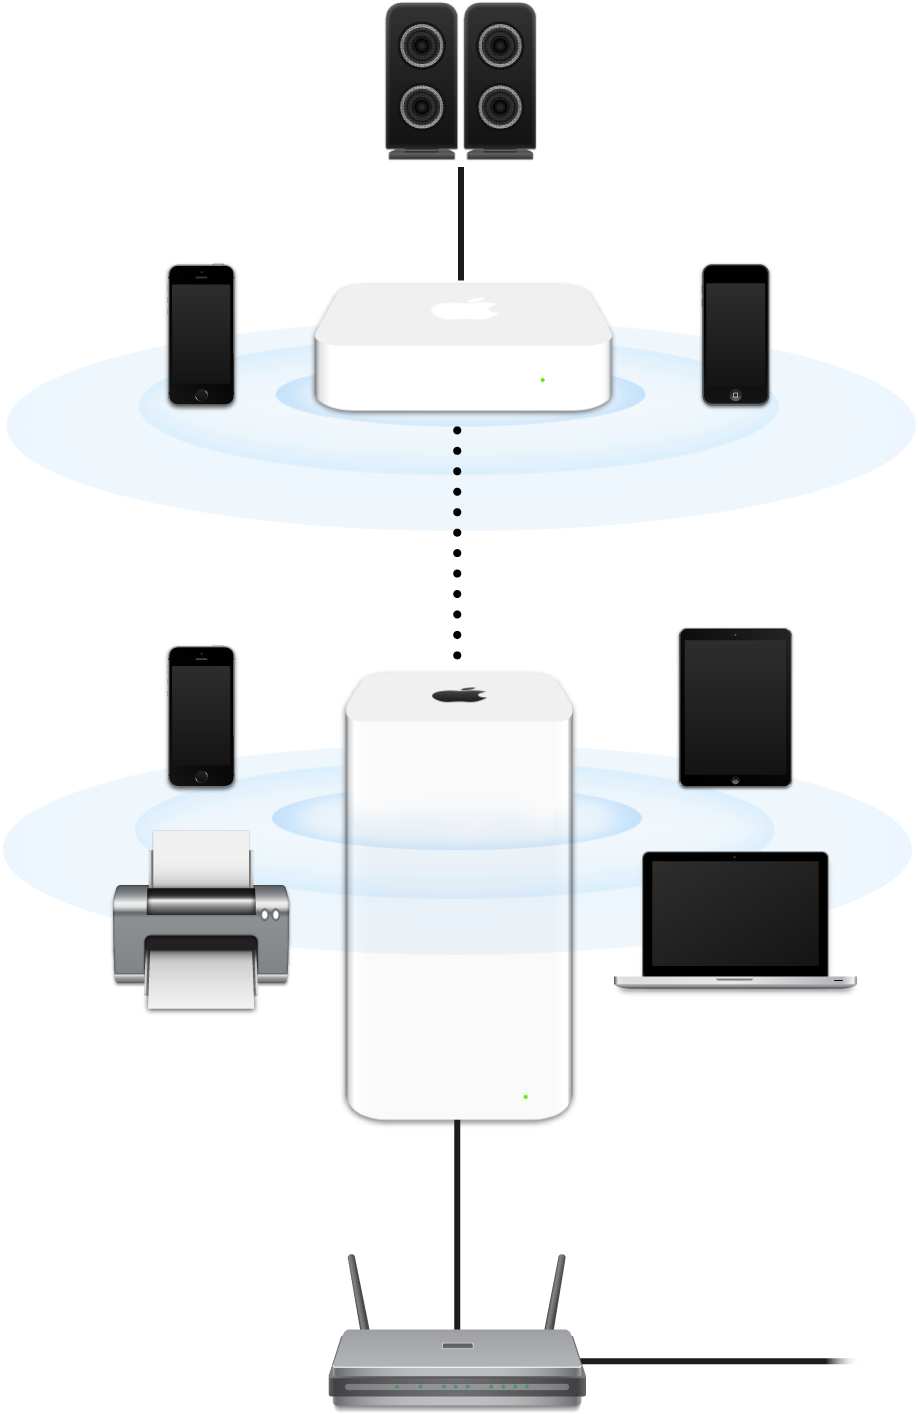 Rozšírená sieť, ktorá zahŕňa AirPort Extreme a AirPort Express pripojené k modemu a vysielajúce prenosy do rôznych zariadení.